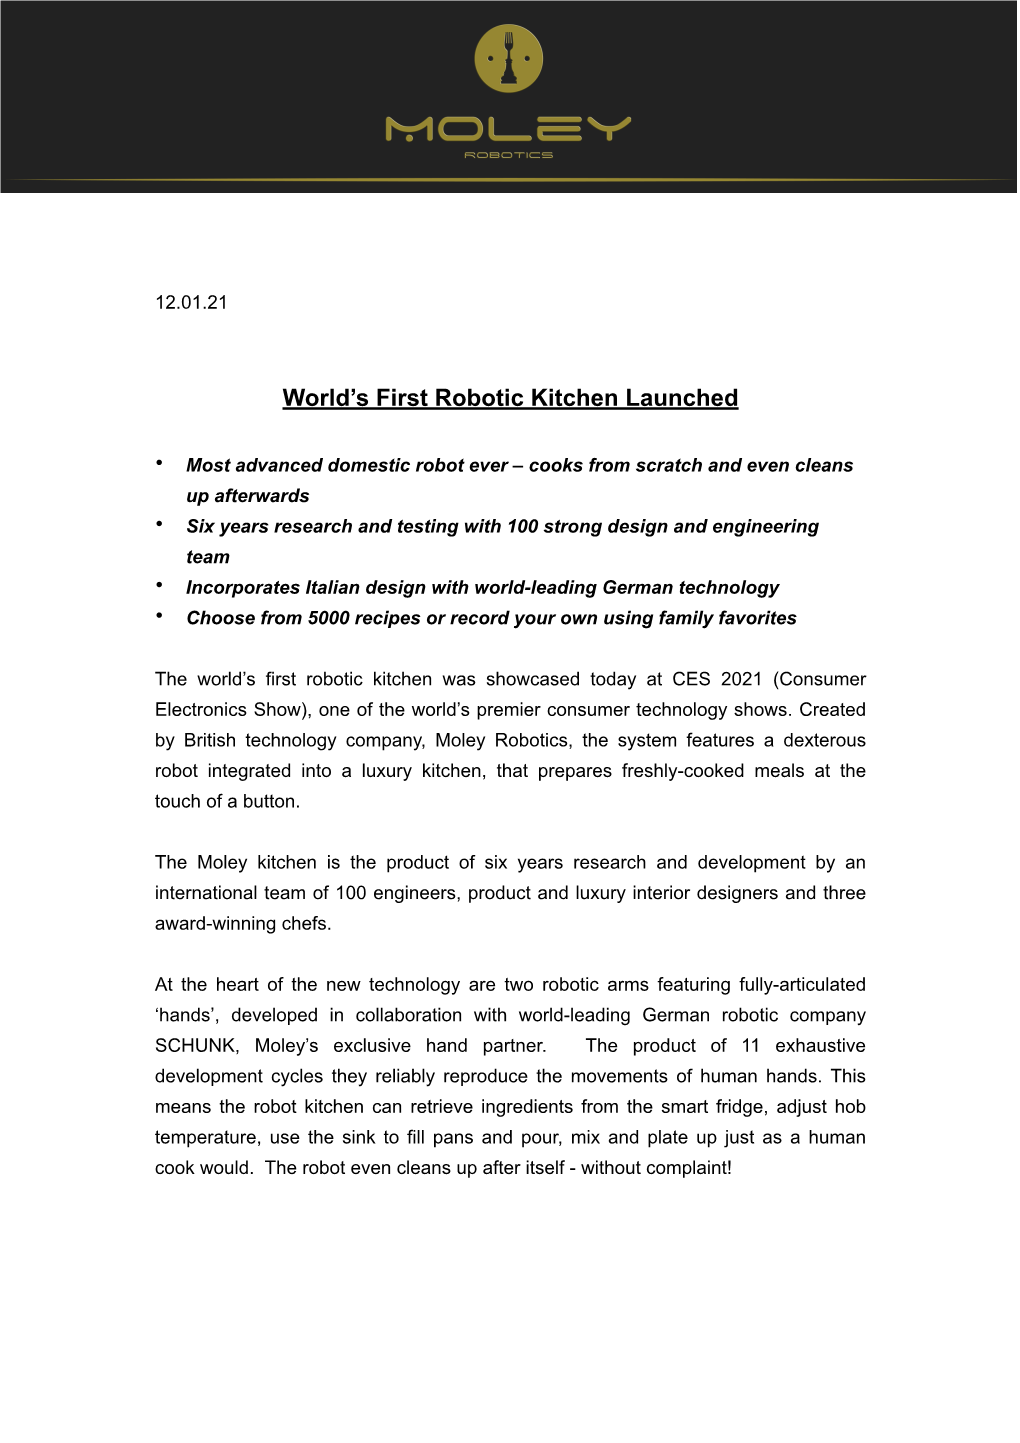 Moley Robotics Press Release